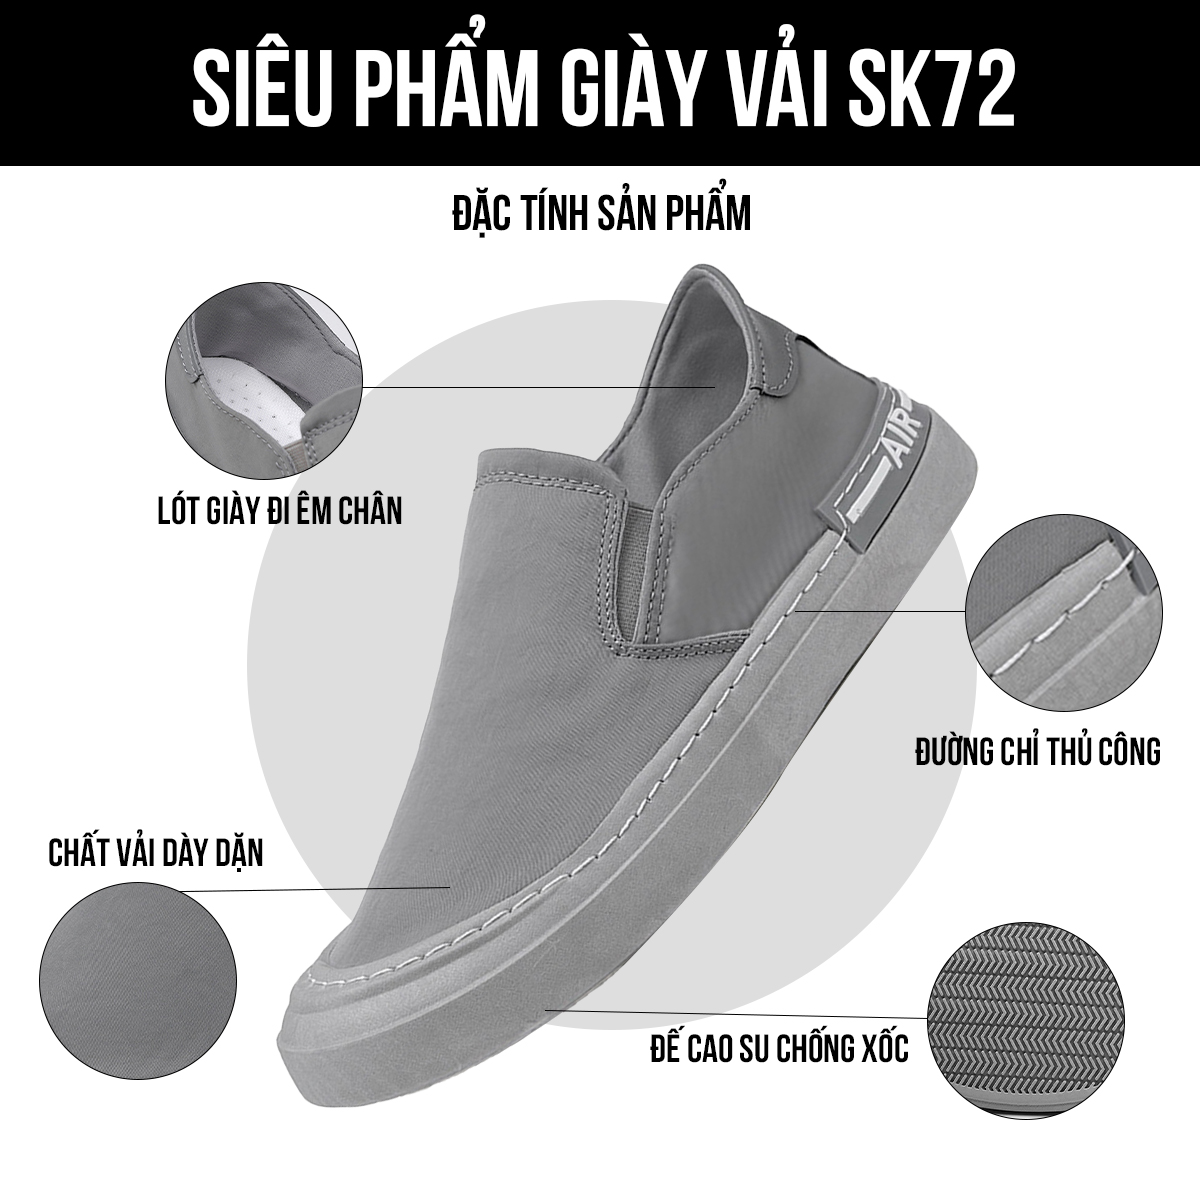 Giày vải nam SK72 đặc tính sản phẩm